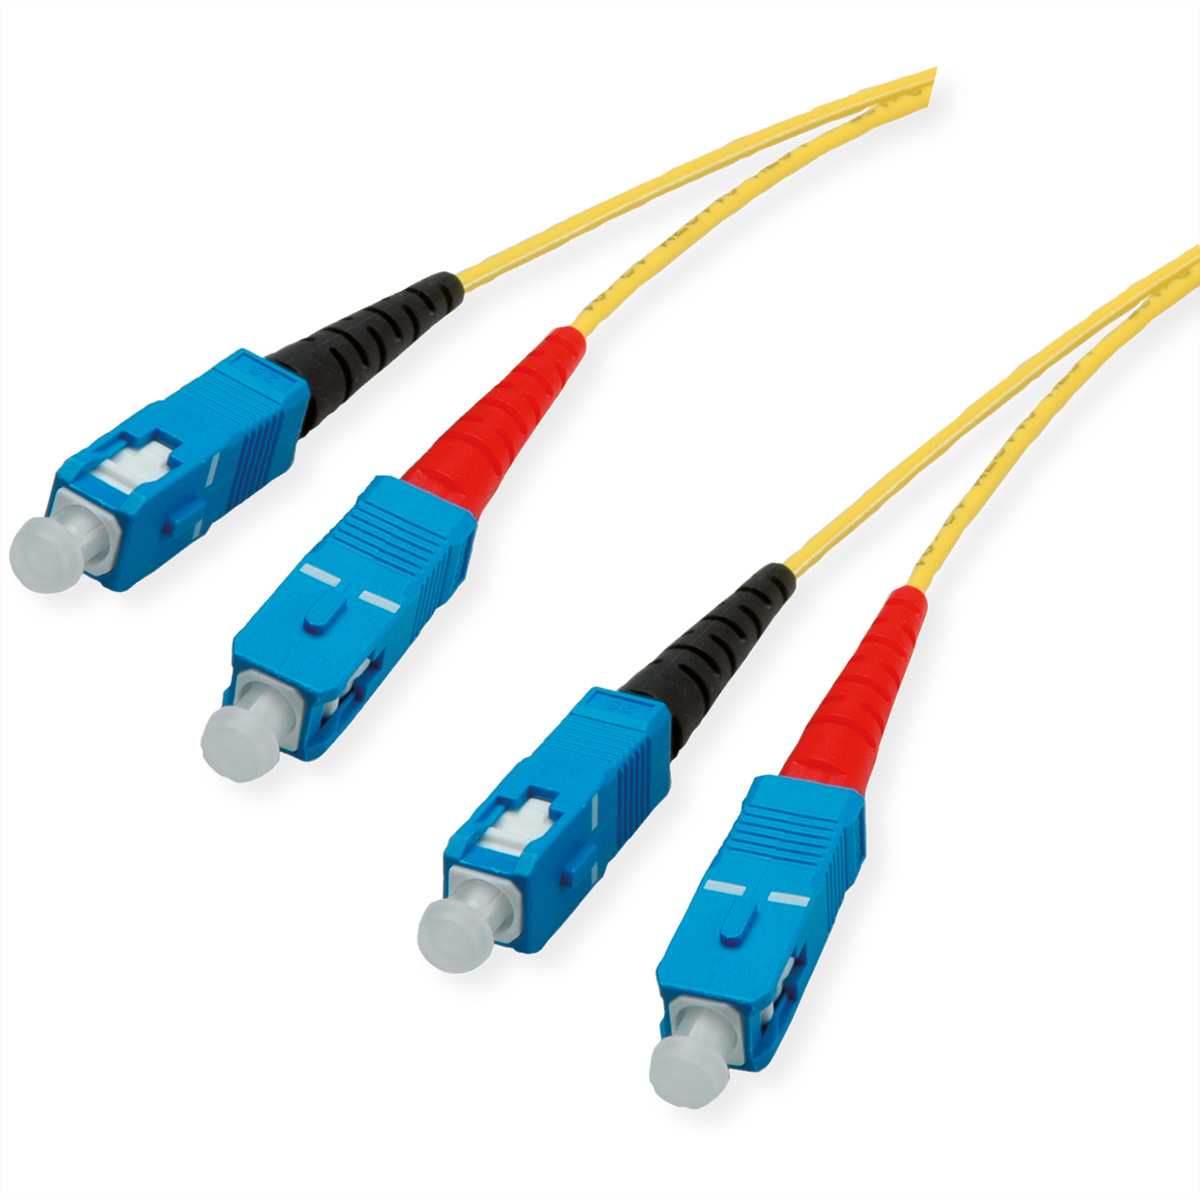 Quality LWL-Kabel Single Mode E9/125µm OS2, SC/SC, gelb, 5 m